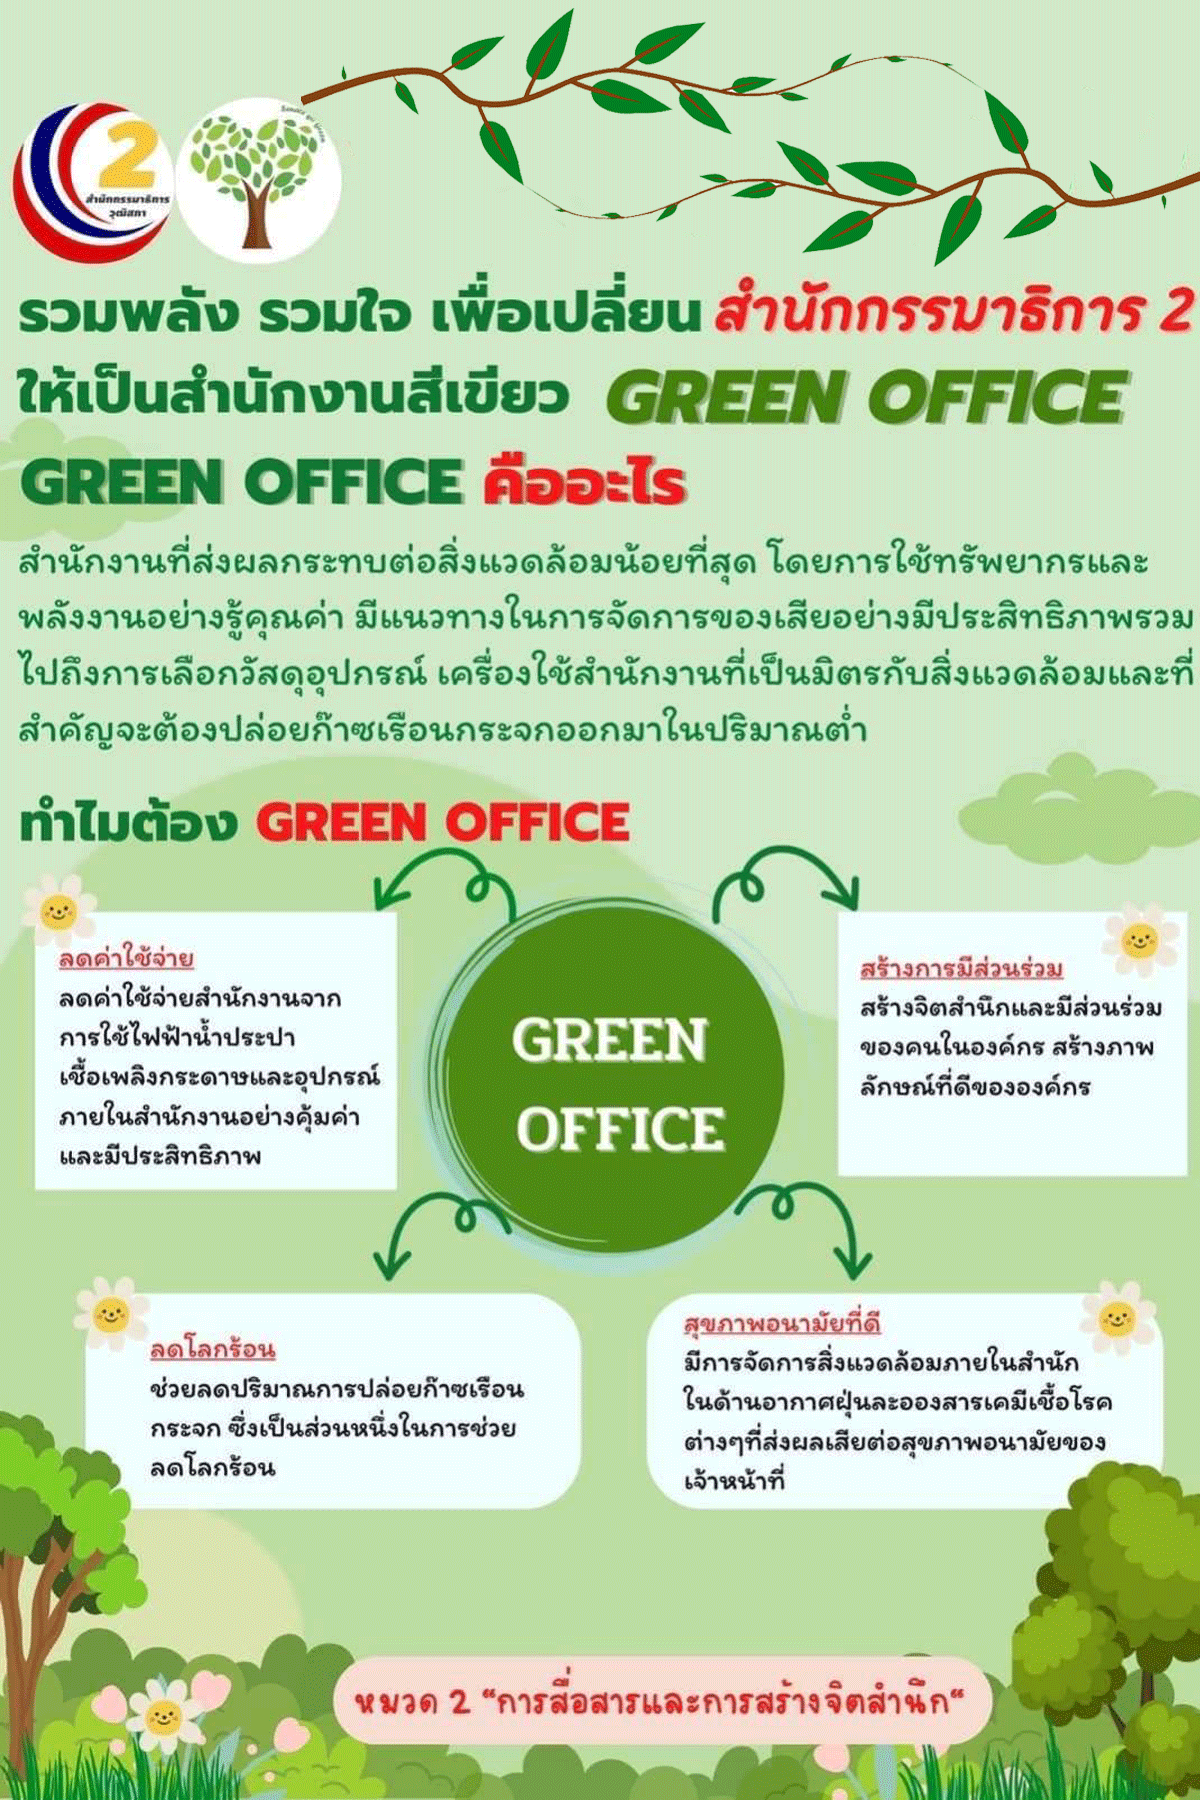 ความหมายของ green office